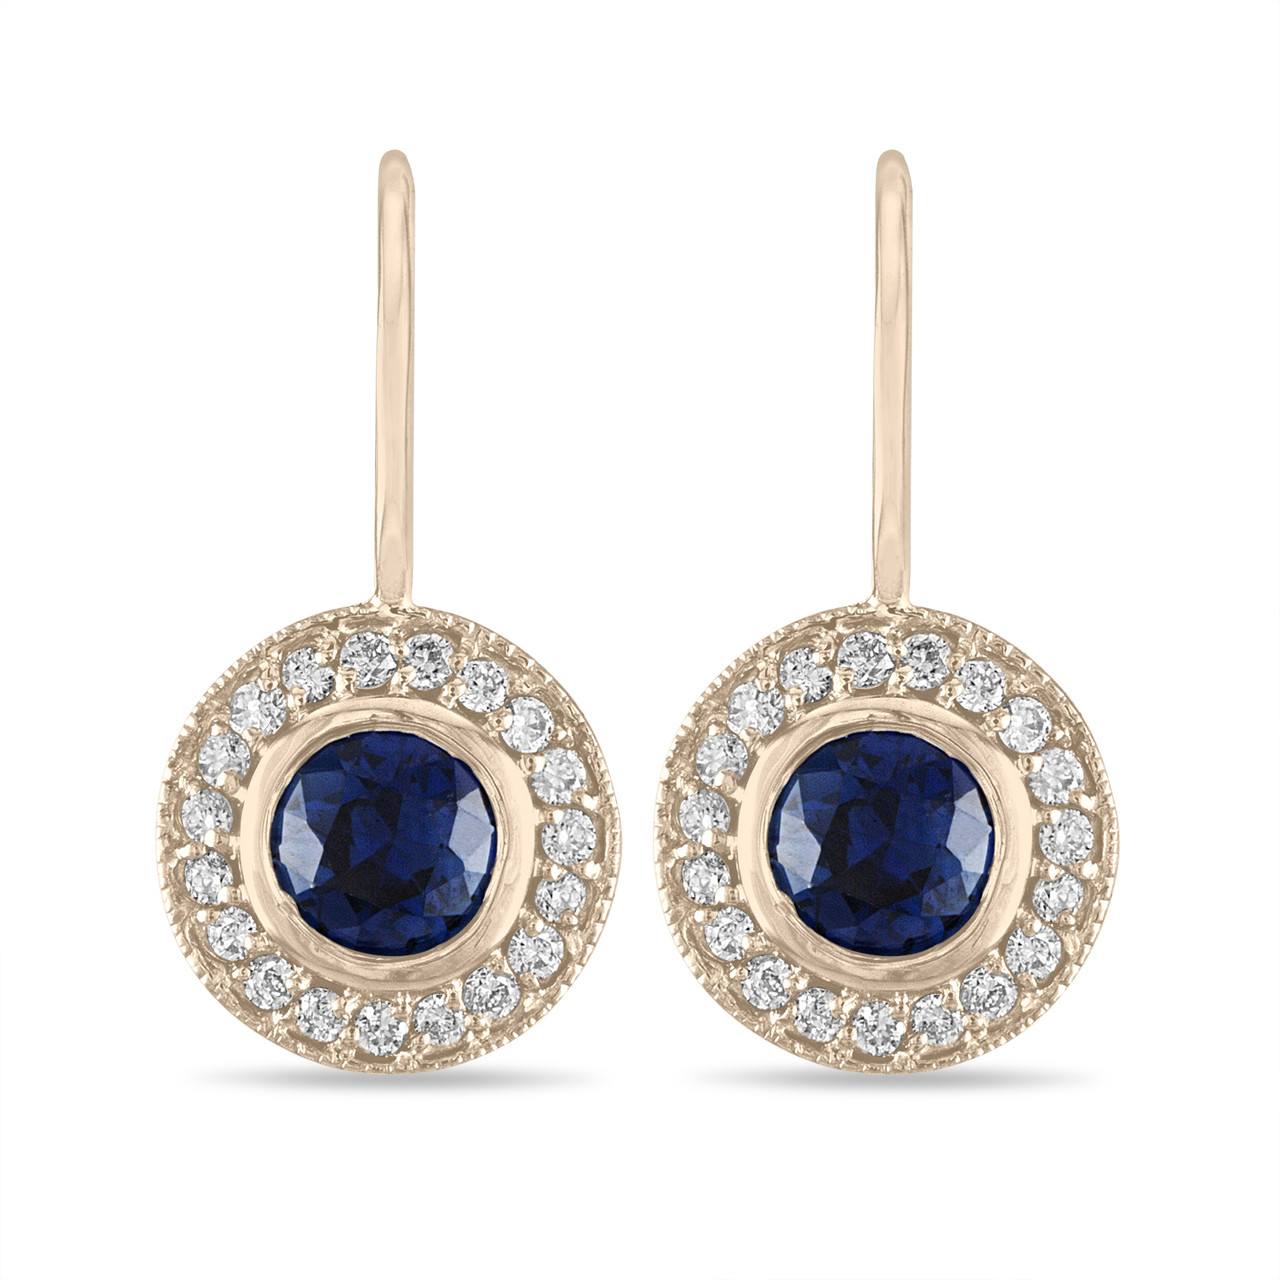 14k Gold Sapphire Earrings on Sale, 59% OFF | www.ingeniovirtual.com